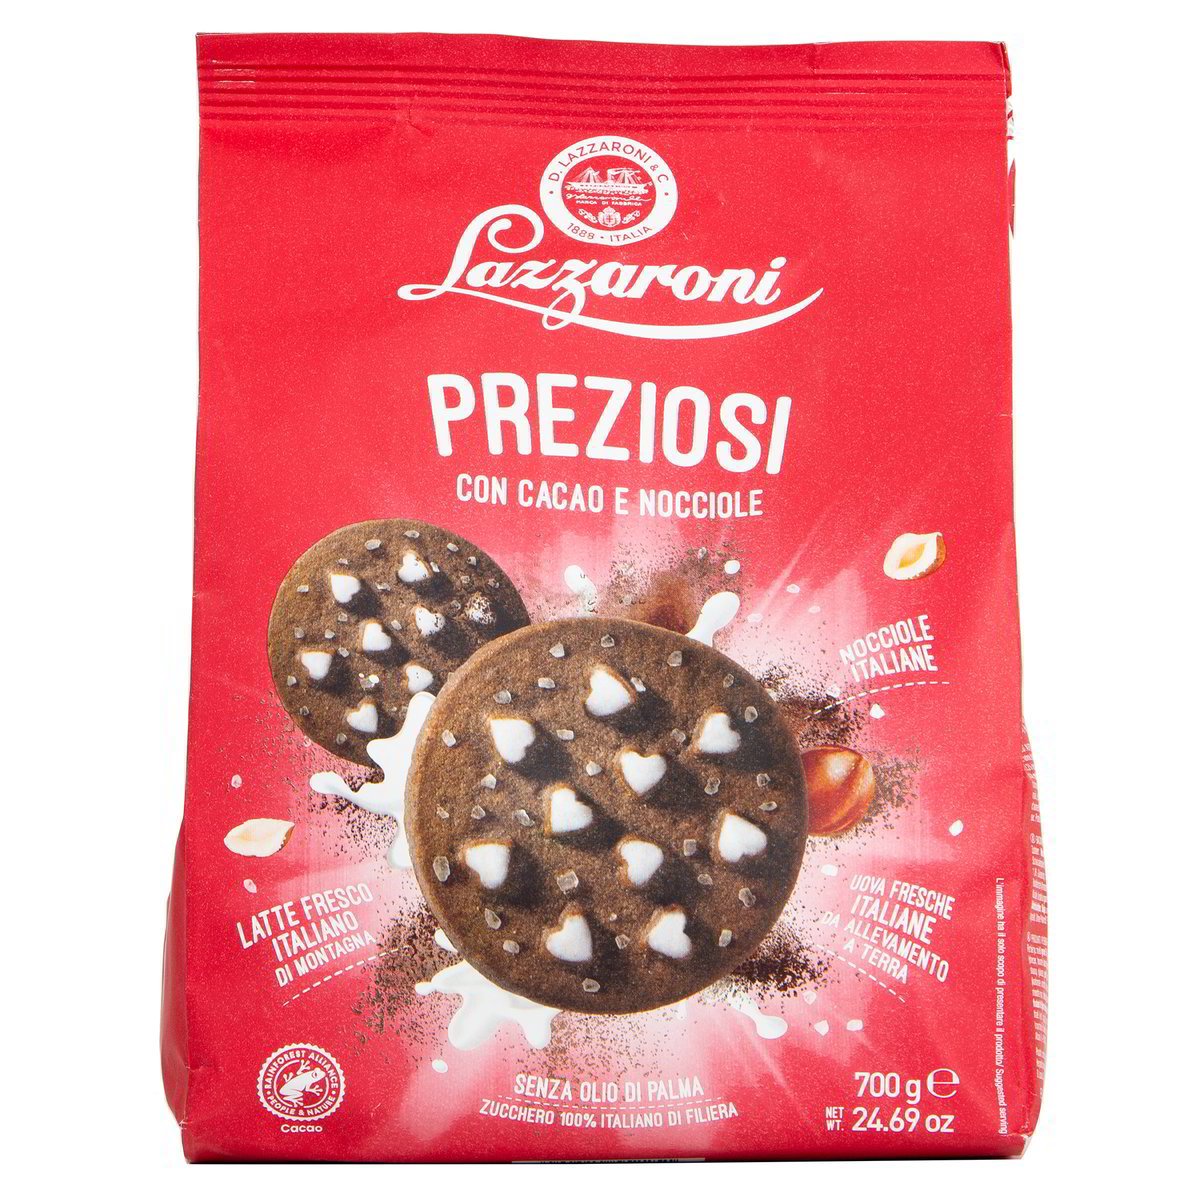 https://www.lowprice.ch/102656-large_default/preziosi-con-cacao-e-nocciole.jpg